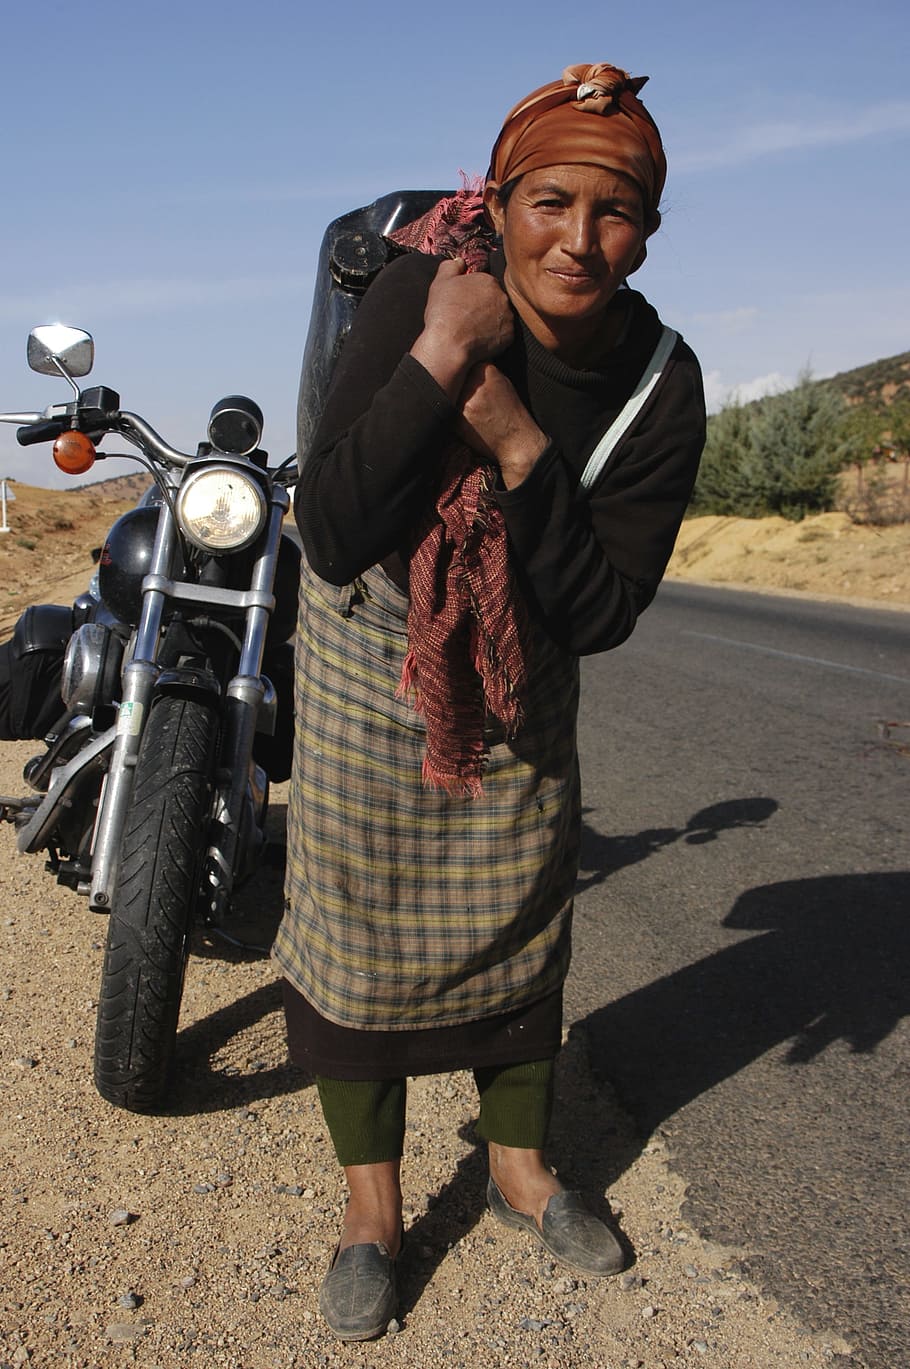 Maroko, wanita, sepeda motor, panjang penuh, satu orang, sinar matahari, transportasi, potret, tampilan depan, orang sungguhan